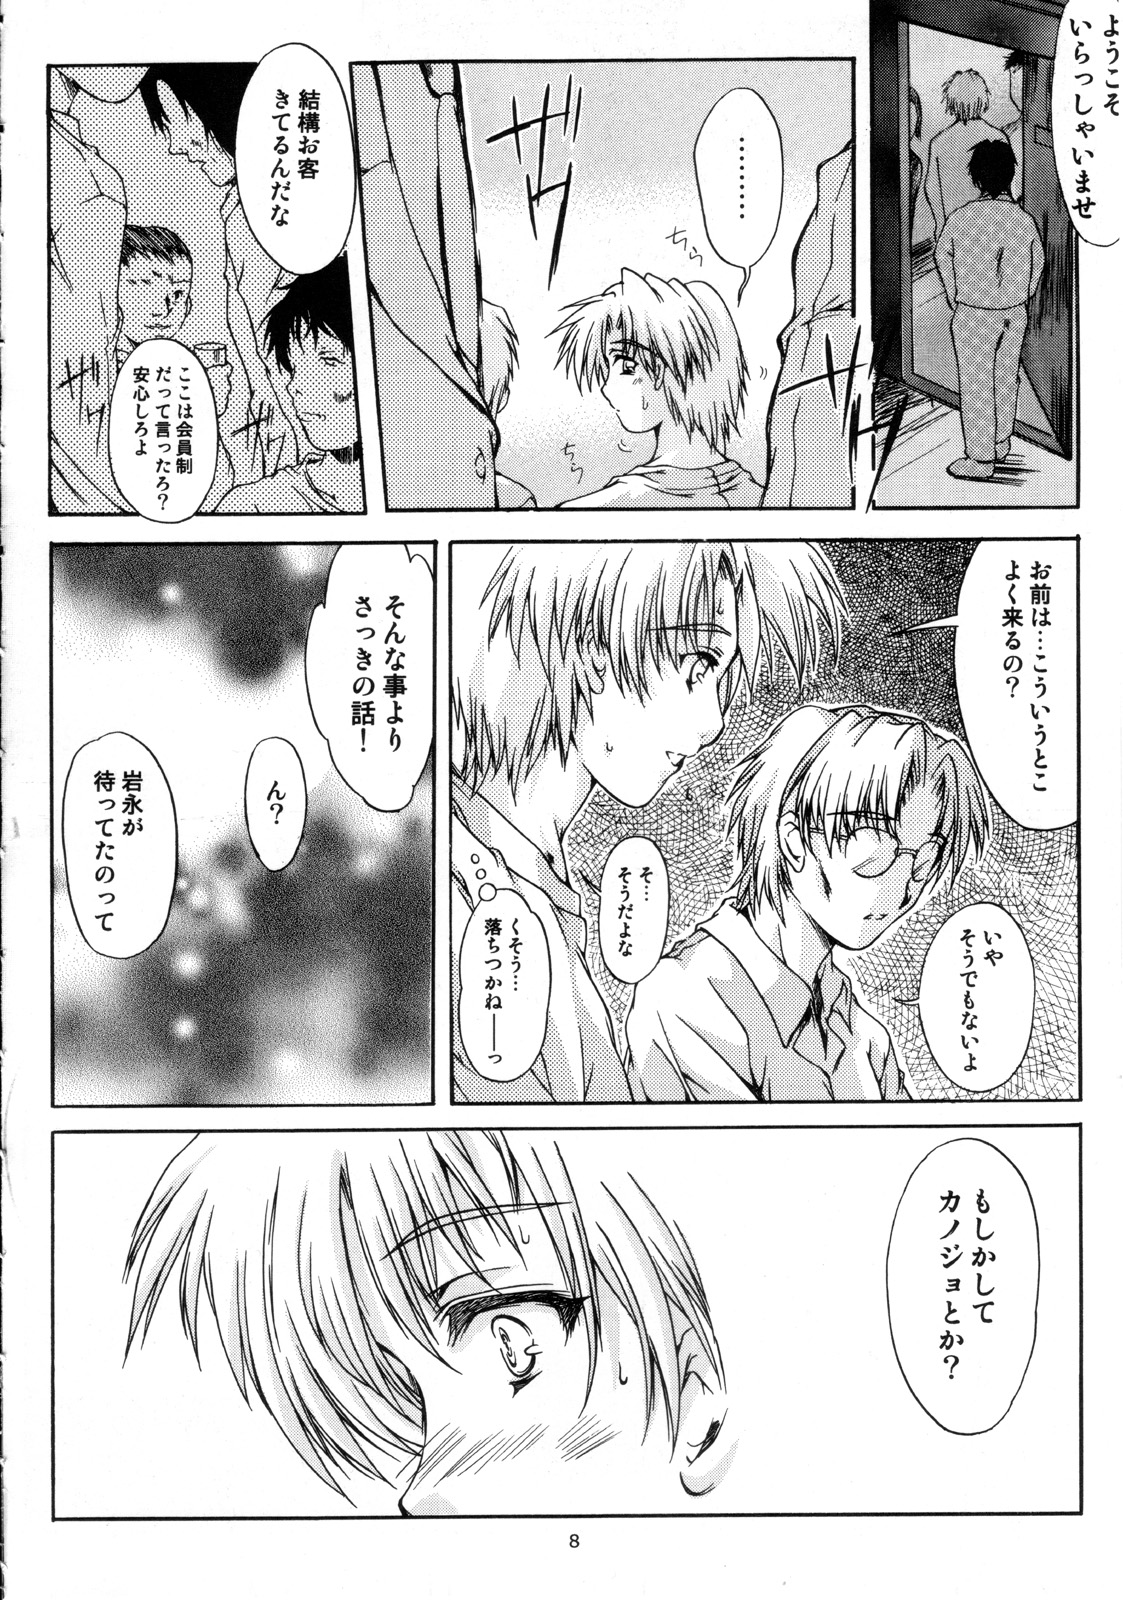 [HIGH RISK REVOLUTION] Shiori Vol.12 Haitoku no Cinderella (Tokimeki Memorial) page 9 full